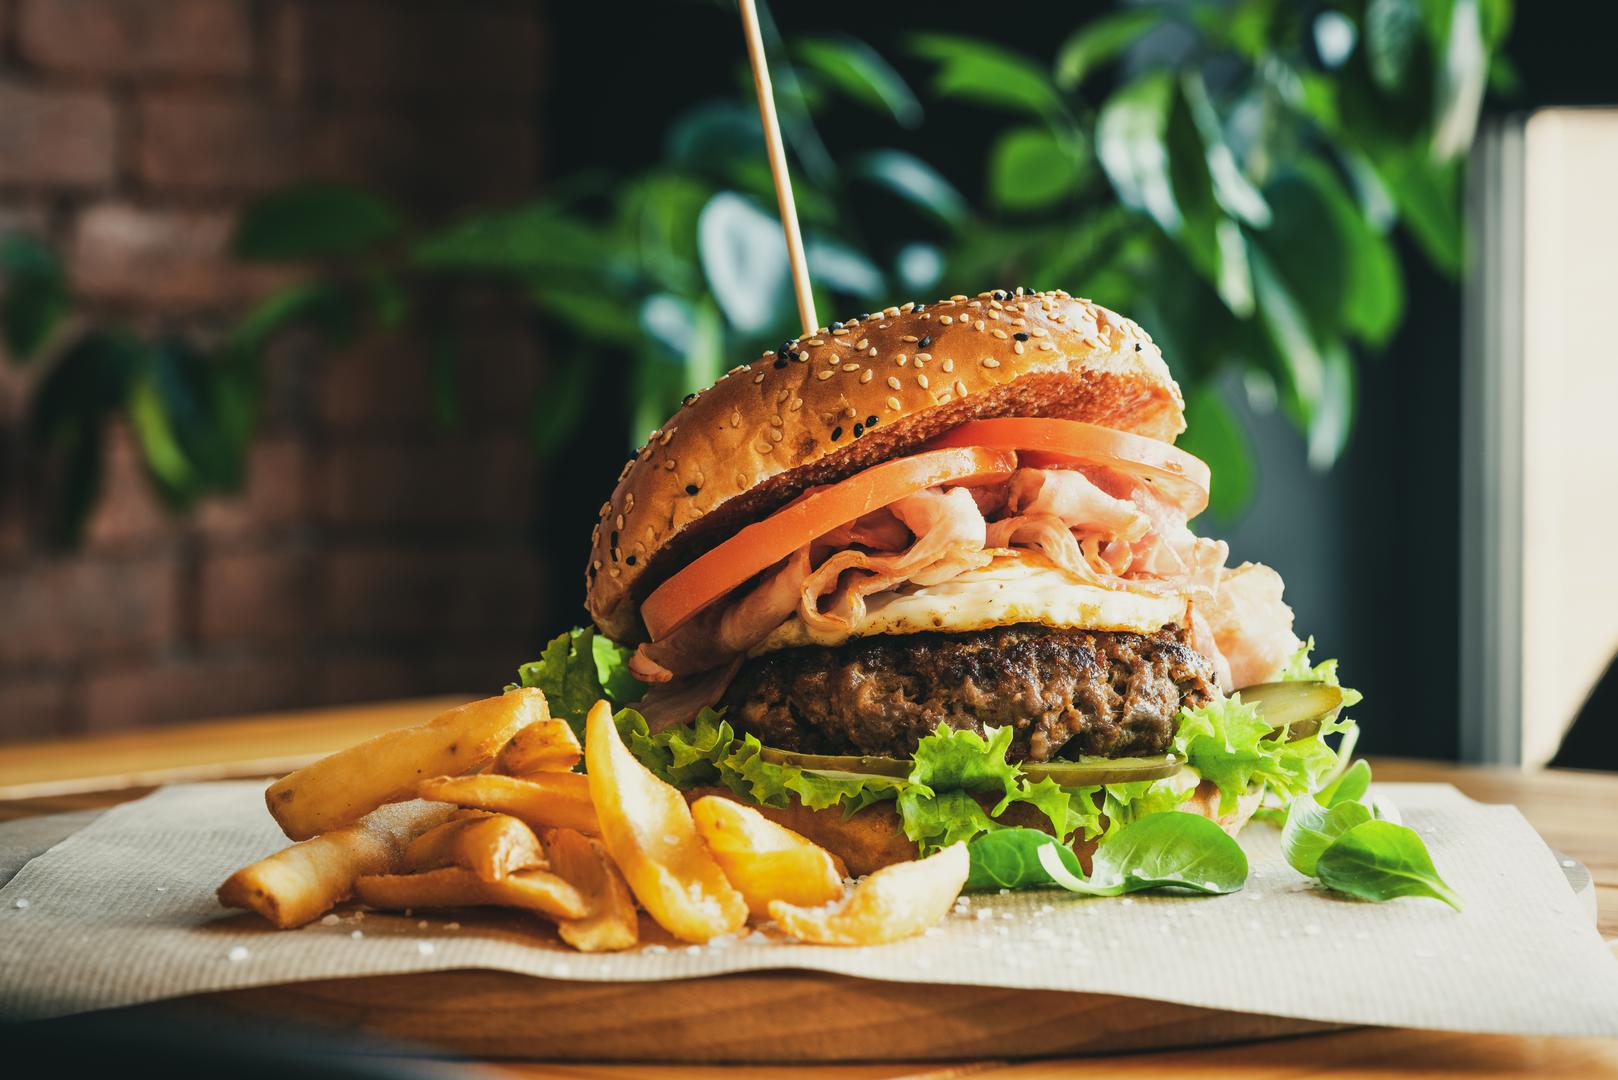 Vaga (23. rujna - 22. listopada): Bistro burger - Vage traže ravnotežu i estetiku. Rodriguez preporučuje bistro burger s plavim sirom, hrskavim kriškama jabuke i rikulom. ‘Ovaj burger odražava Vagin osjećaj za harmoniju i ljepotu’, kaže ona.